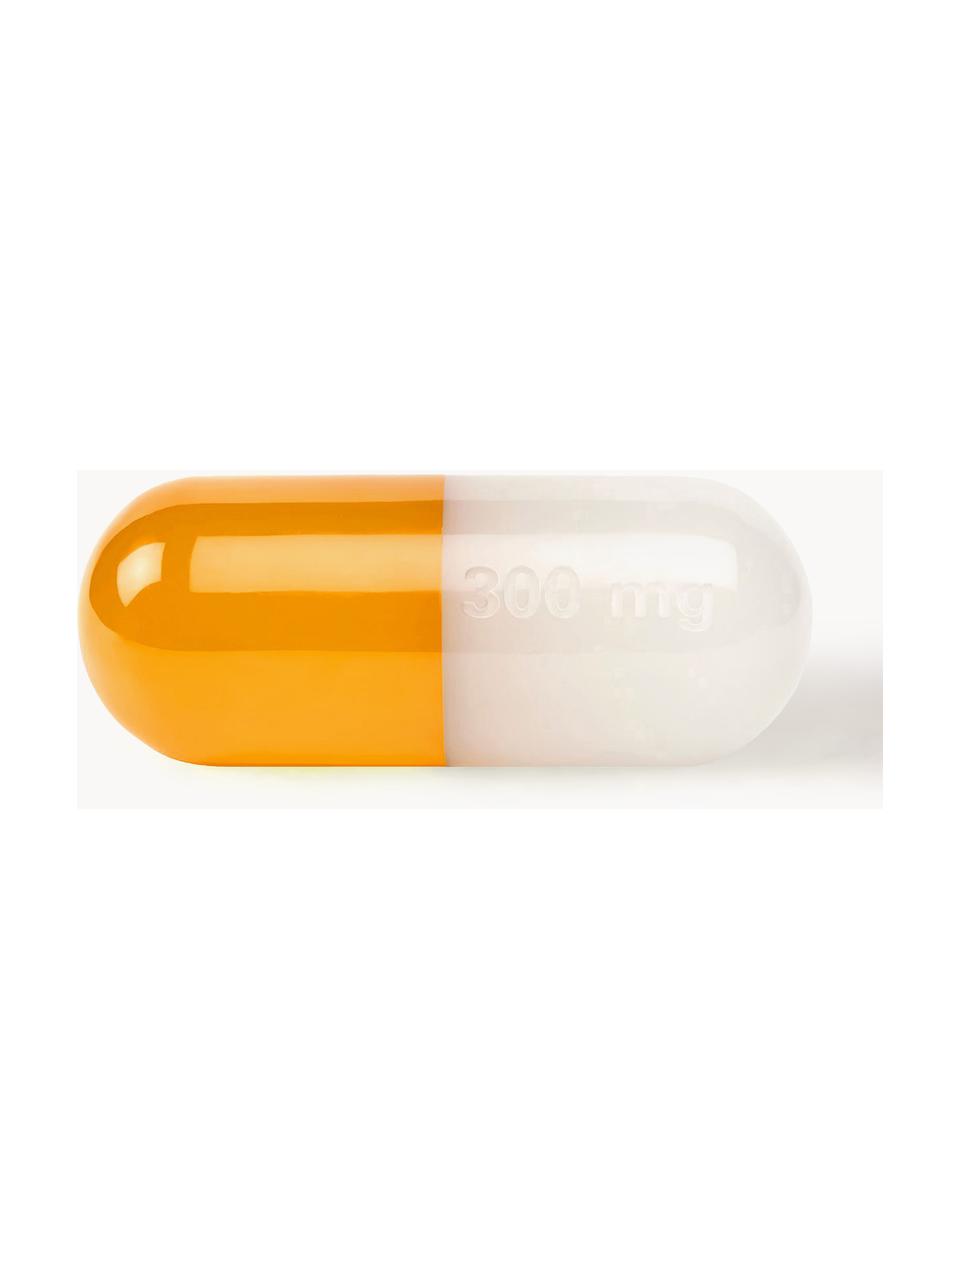 Dekorácia Pill, Polyakryl, leštený, Biela, oranžová, Š 24 x V 9 cm